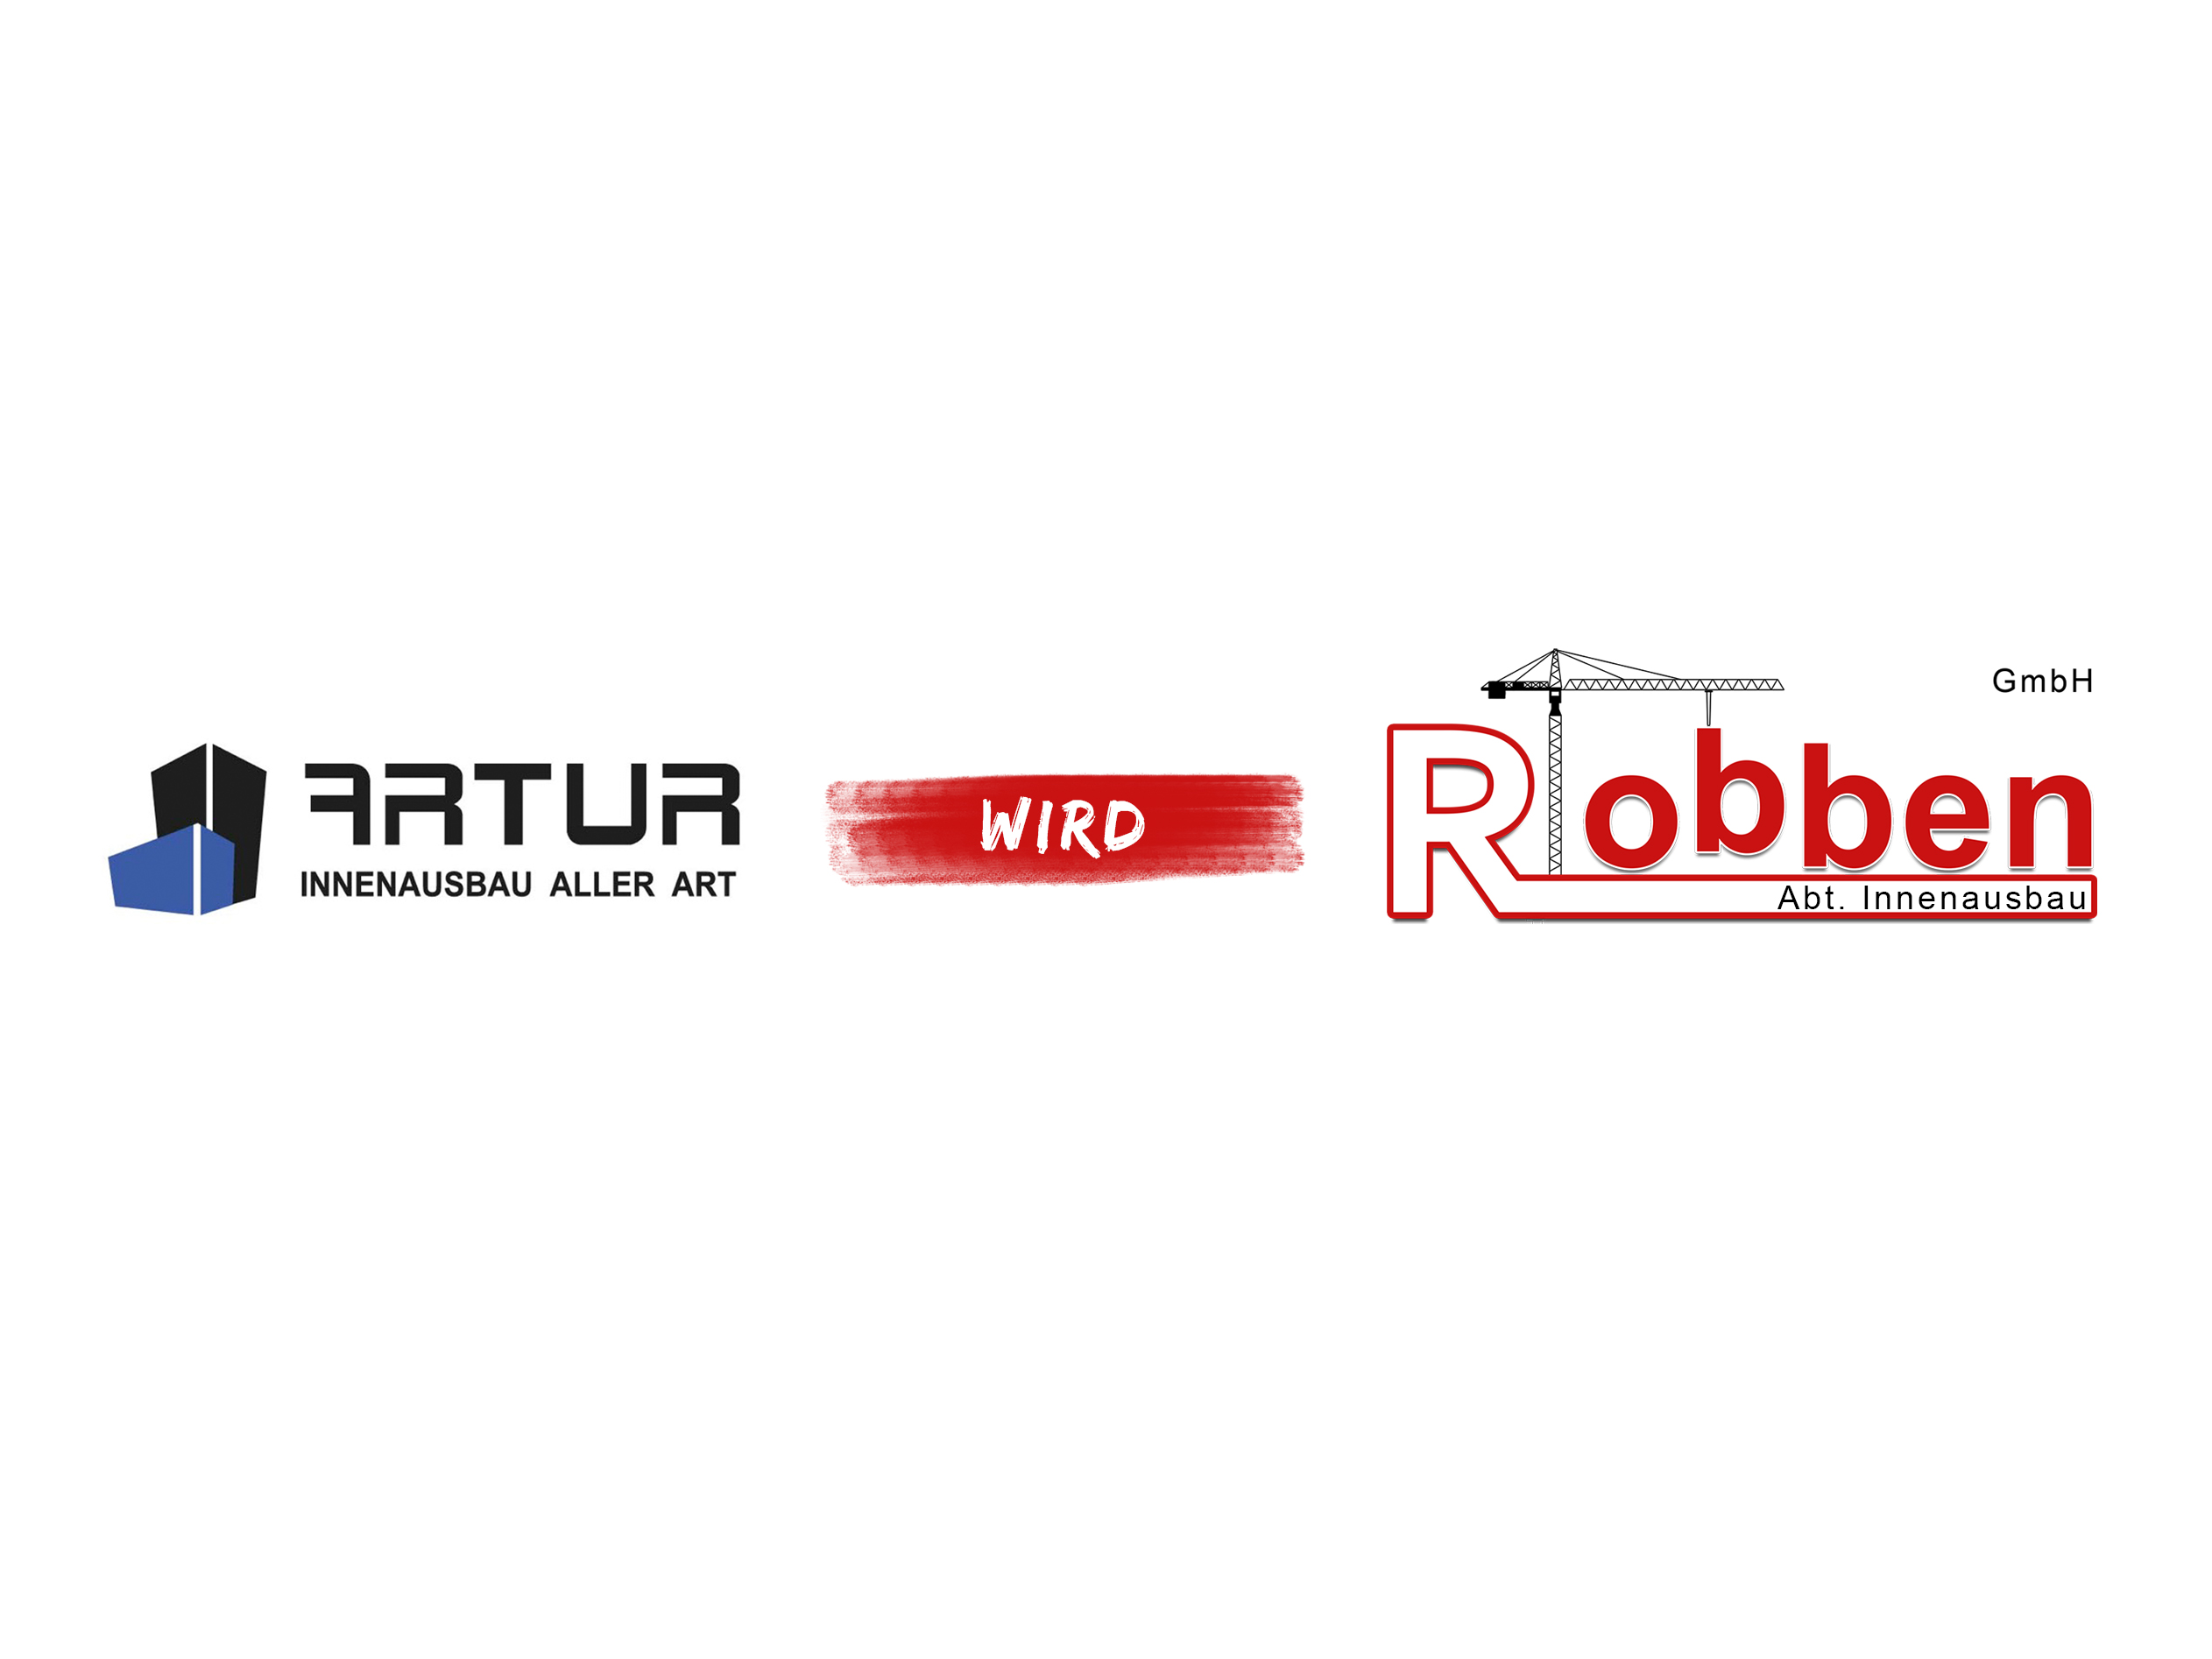 Artur Innenausbau aller Art wird Bauunternehmen Robben GmbH Abteilung Innenausbau